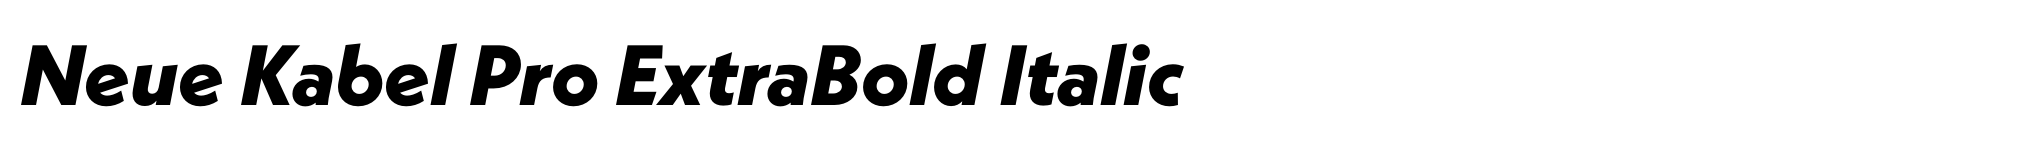 Neue Kabel Pro ExtraBold Italic image